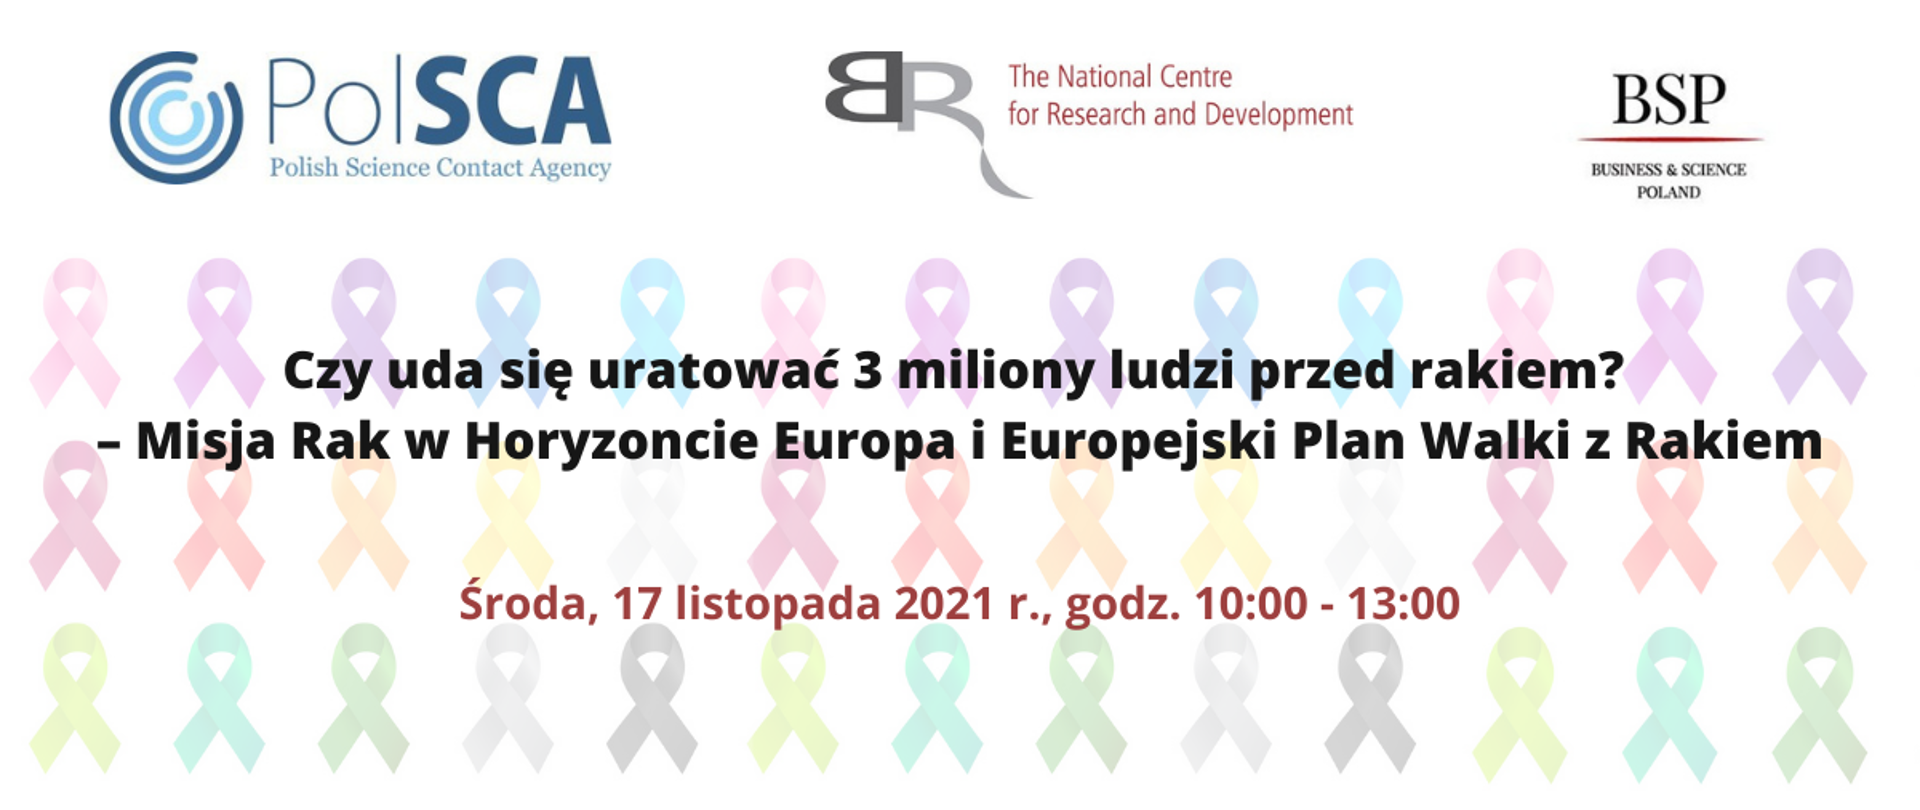 Czy uda się uratować 3 miliony ludzi przed rakiem? – Misja Rak w Horyzoncie Europa i Europejski Plan Walki z Rakiem